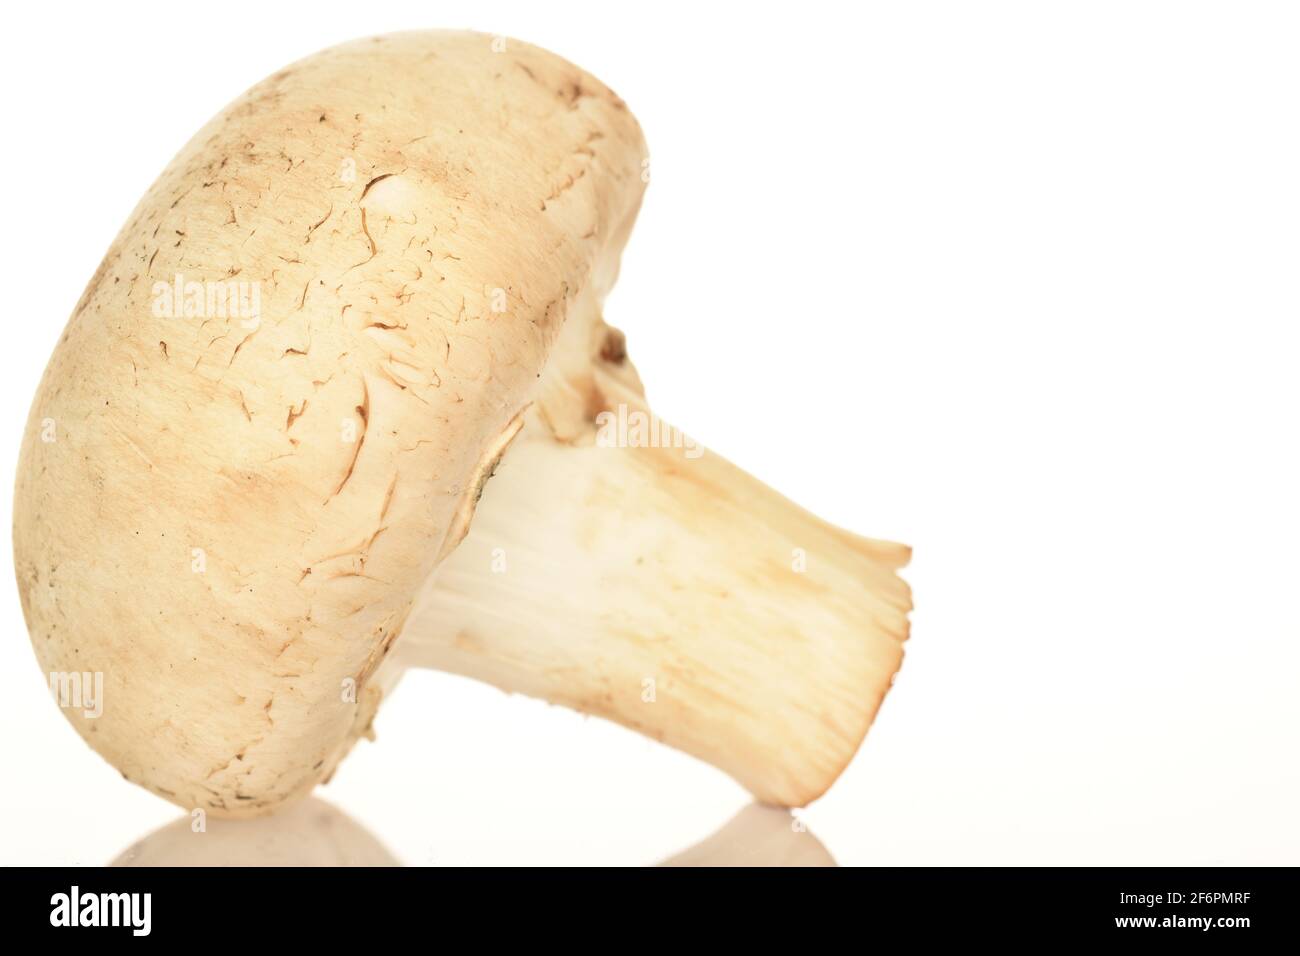 Un fungo di champignon biologico fresco e appetitoso su sfondo bianco. Foto Stock